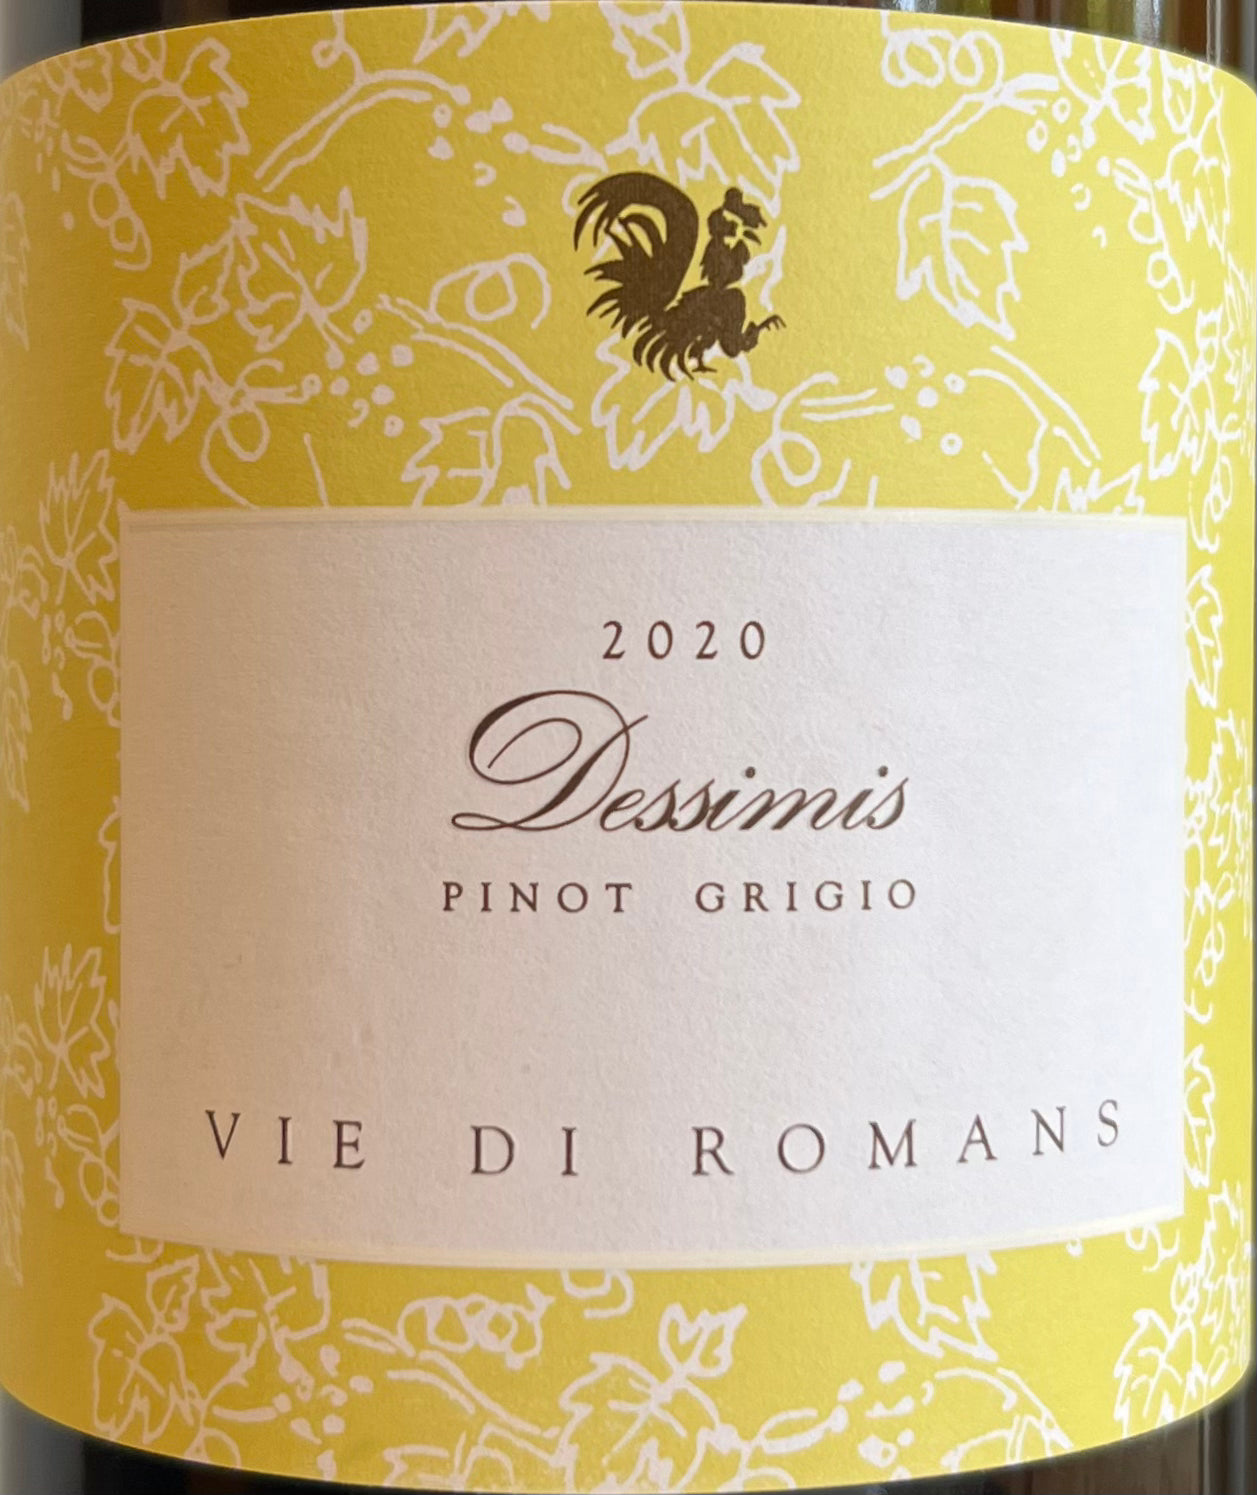 Vie di Romans 'Dessimi' - Pinot Grigio